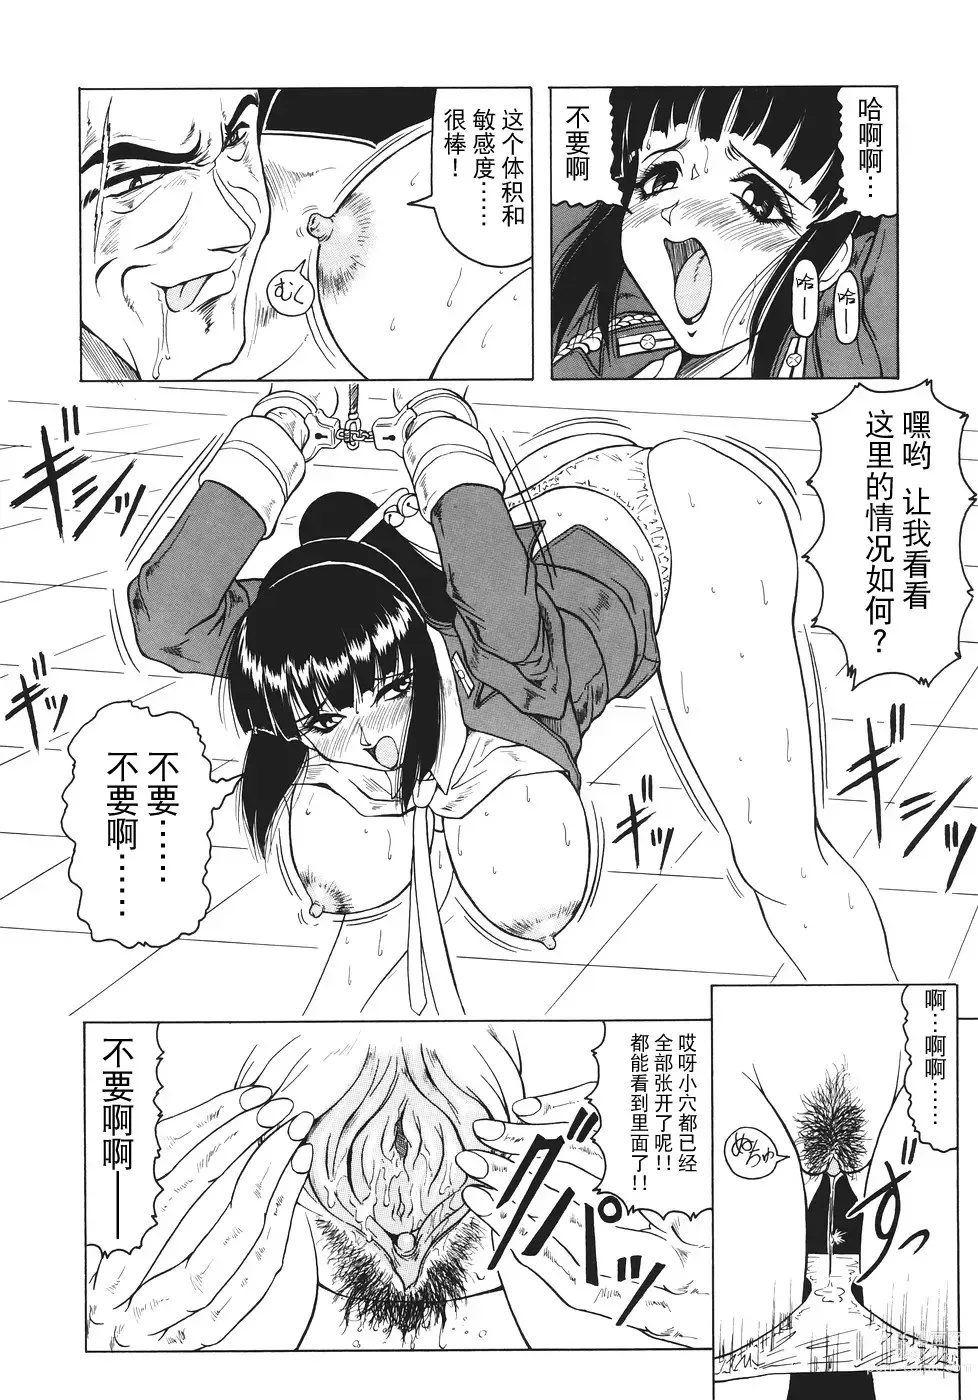 Page 15 of manga Kamyla